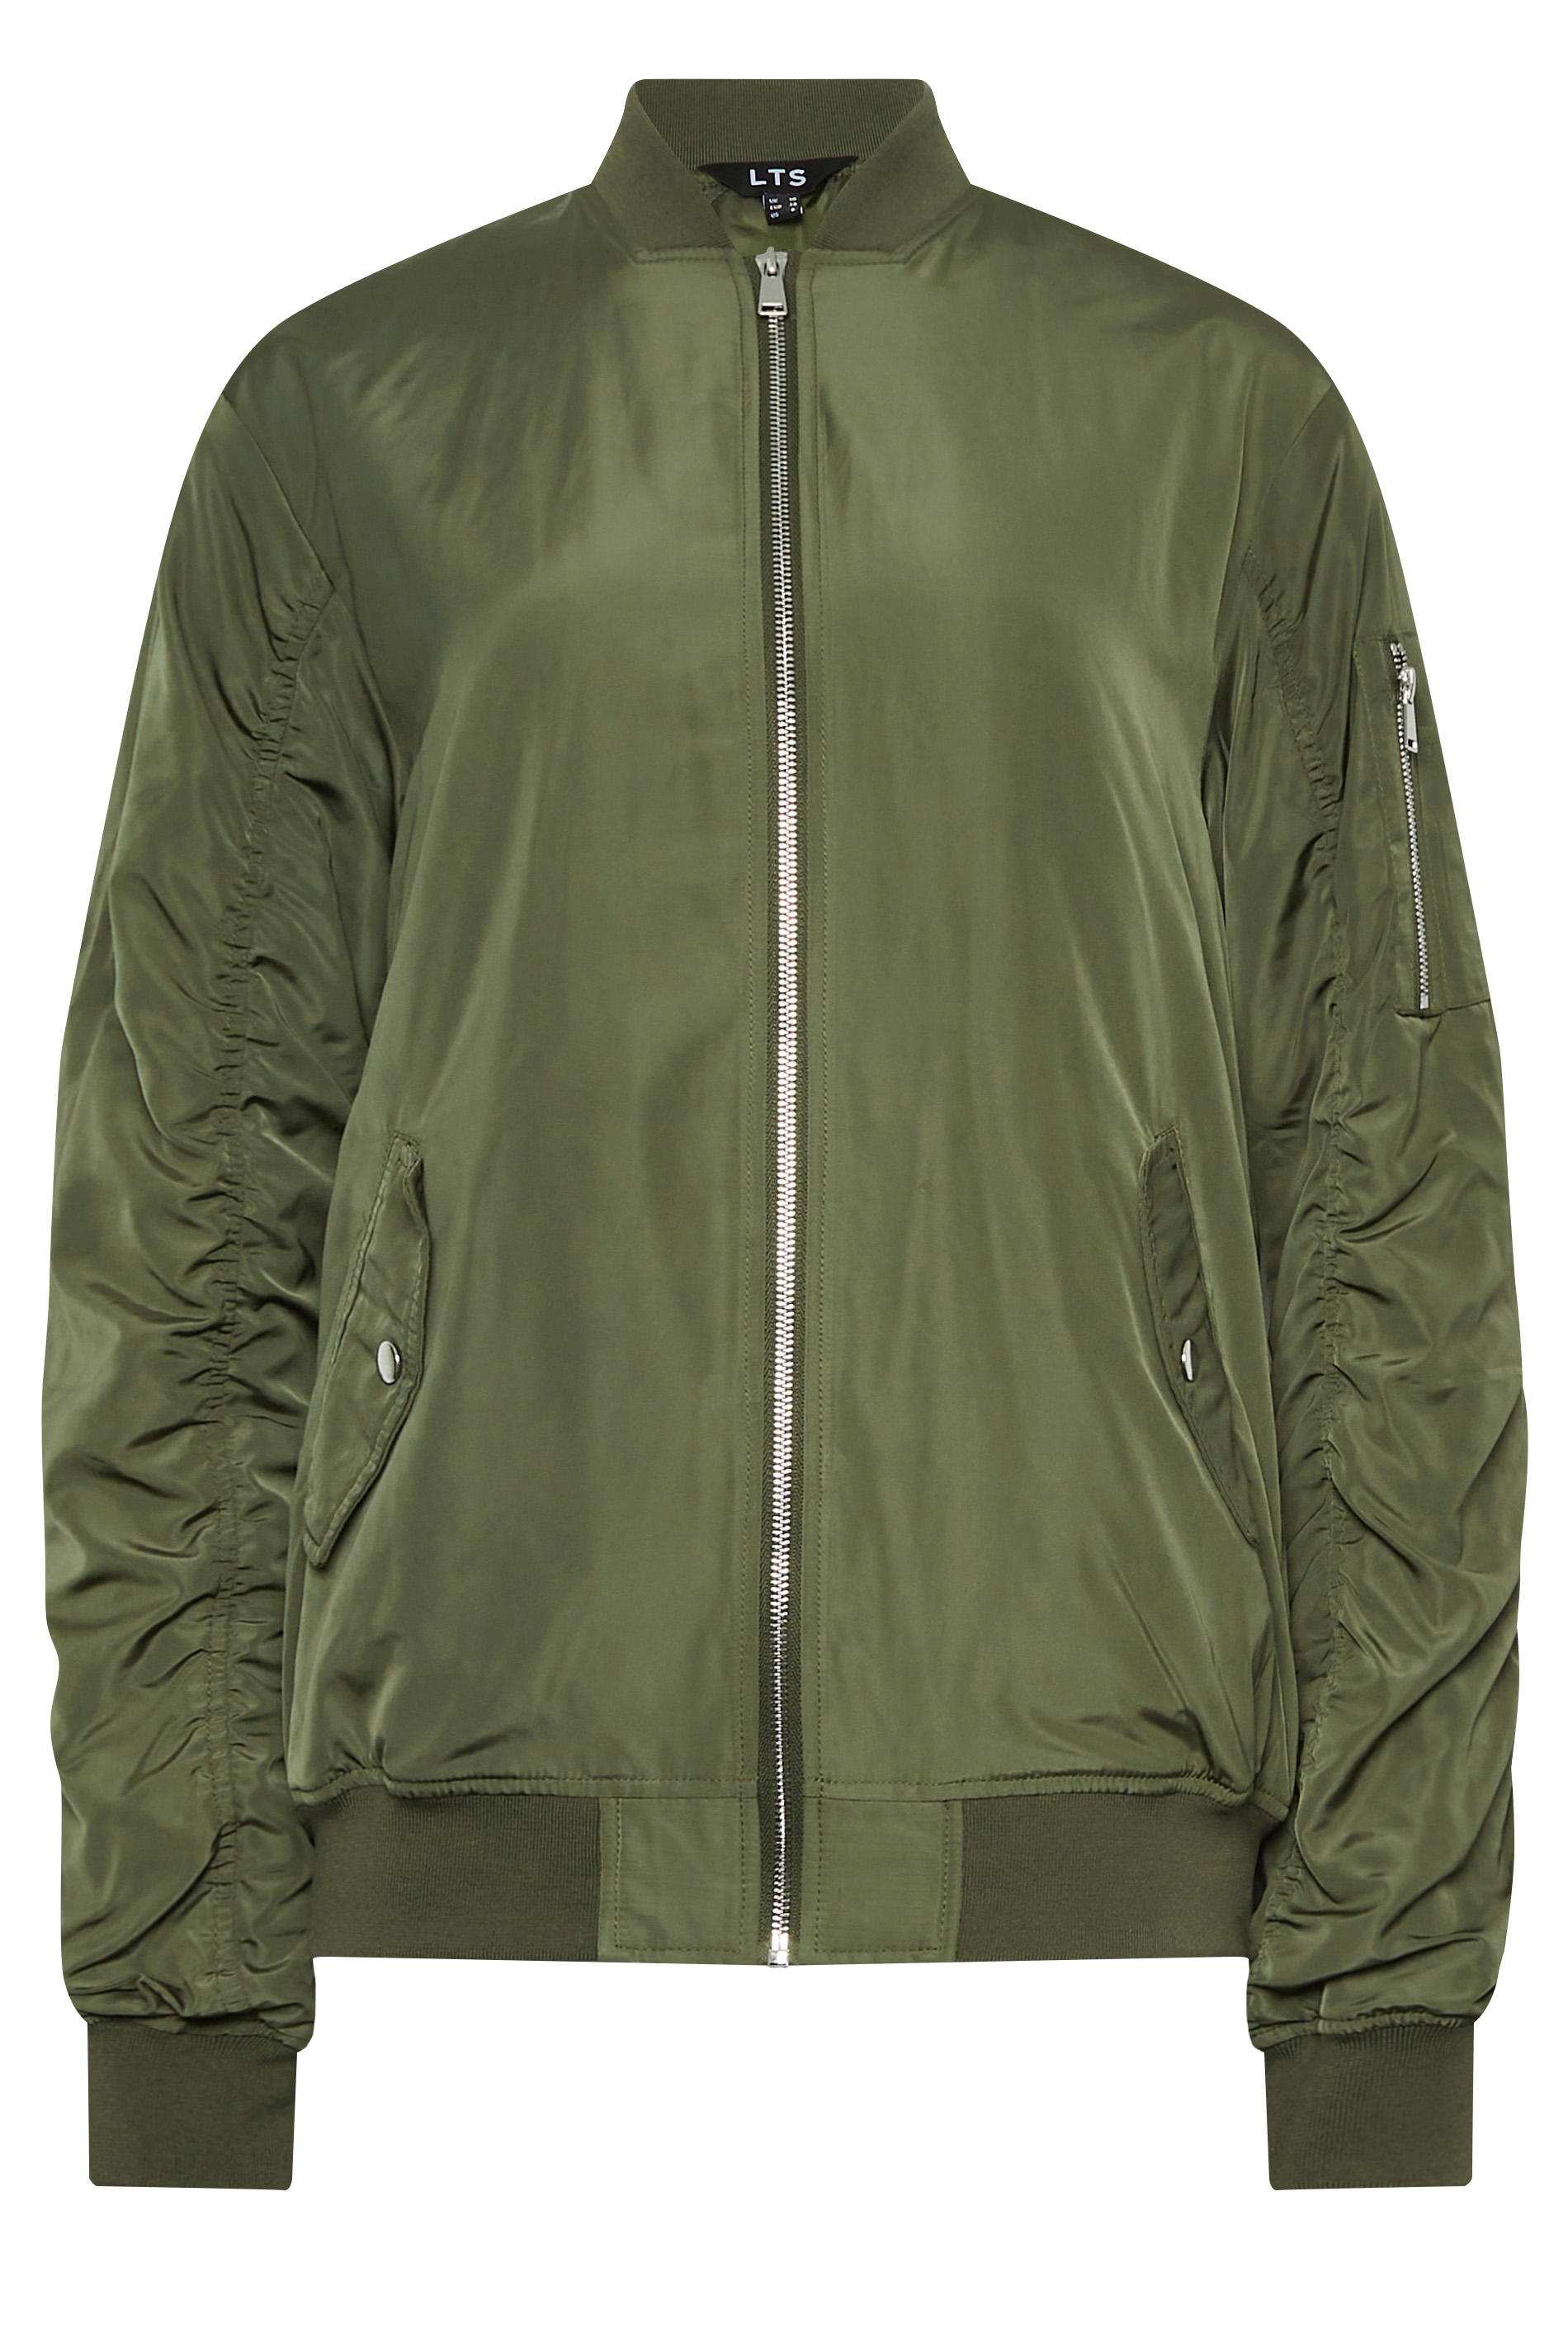 LTS Tall Women's Khaki Green Bomber Jacket